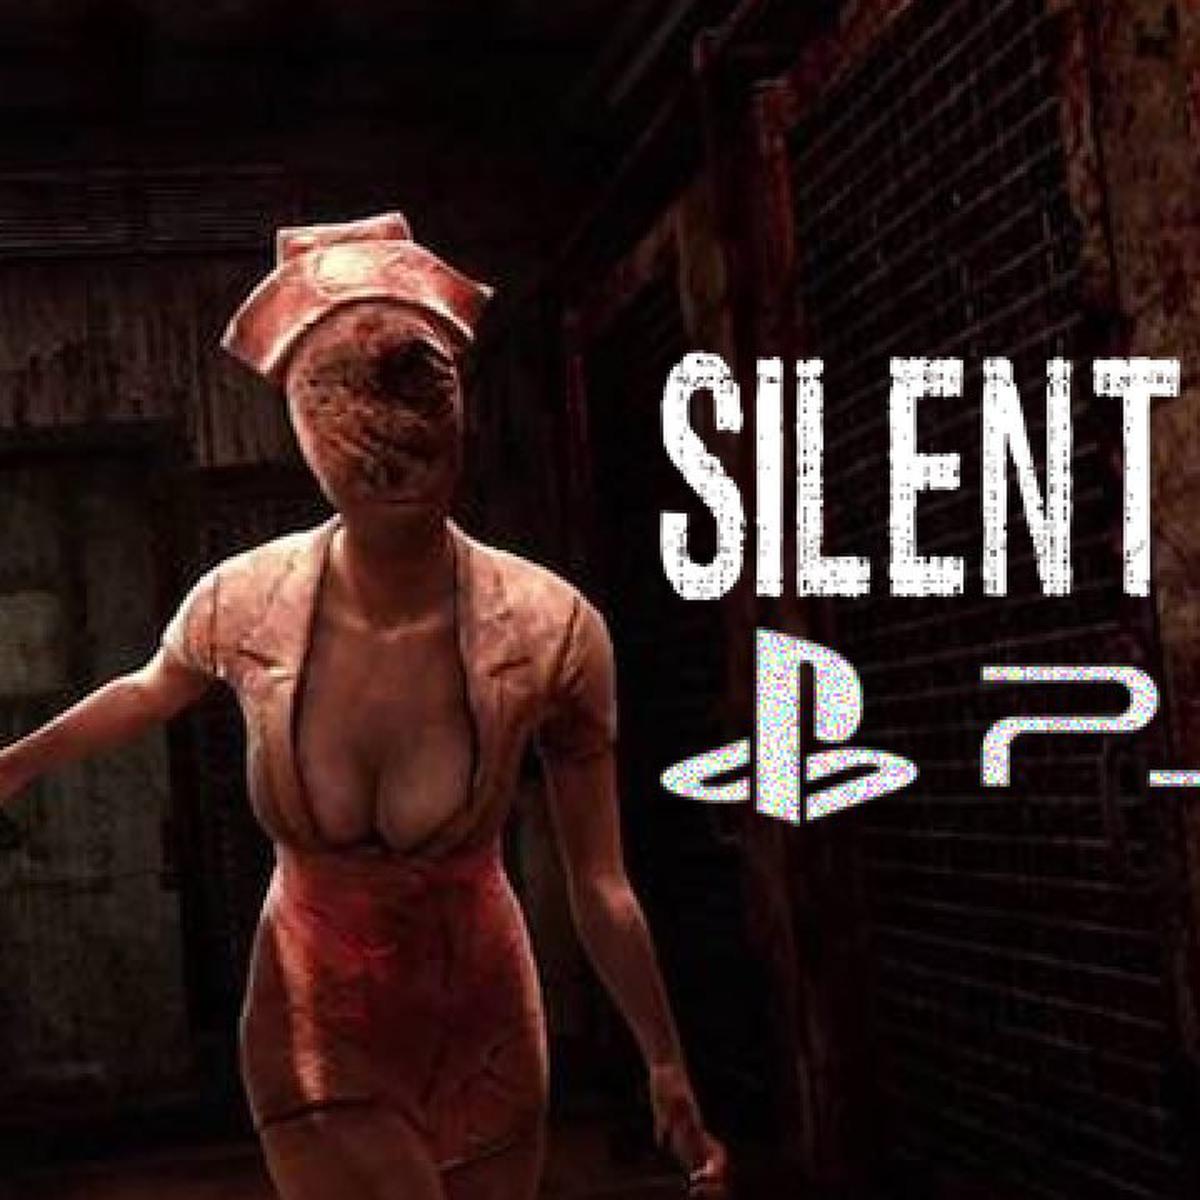 Todojuegos on Instagram: Lanzamiento Confirmado Silent Hill 2 Playstation  5 Uno de las sagas mas polemicas continua Detalles aca…   #SilentHill #ps5 #konami #play5 #todojuegos